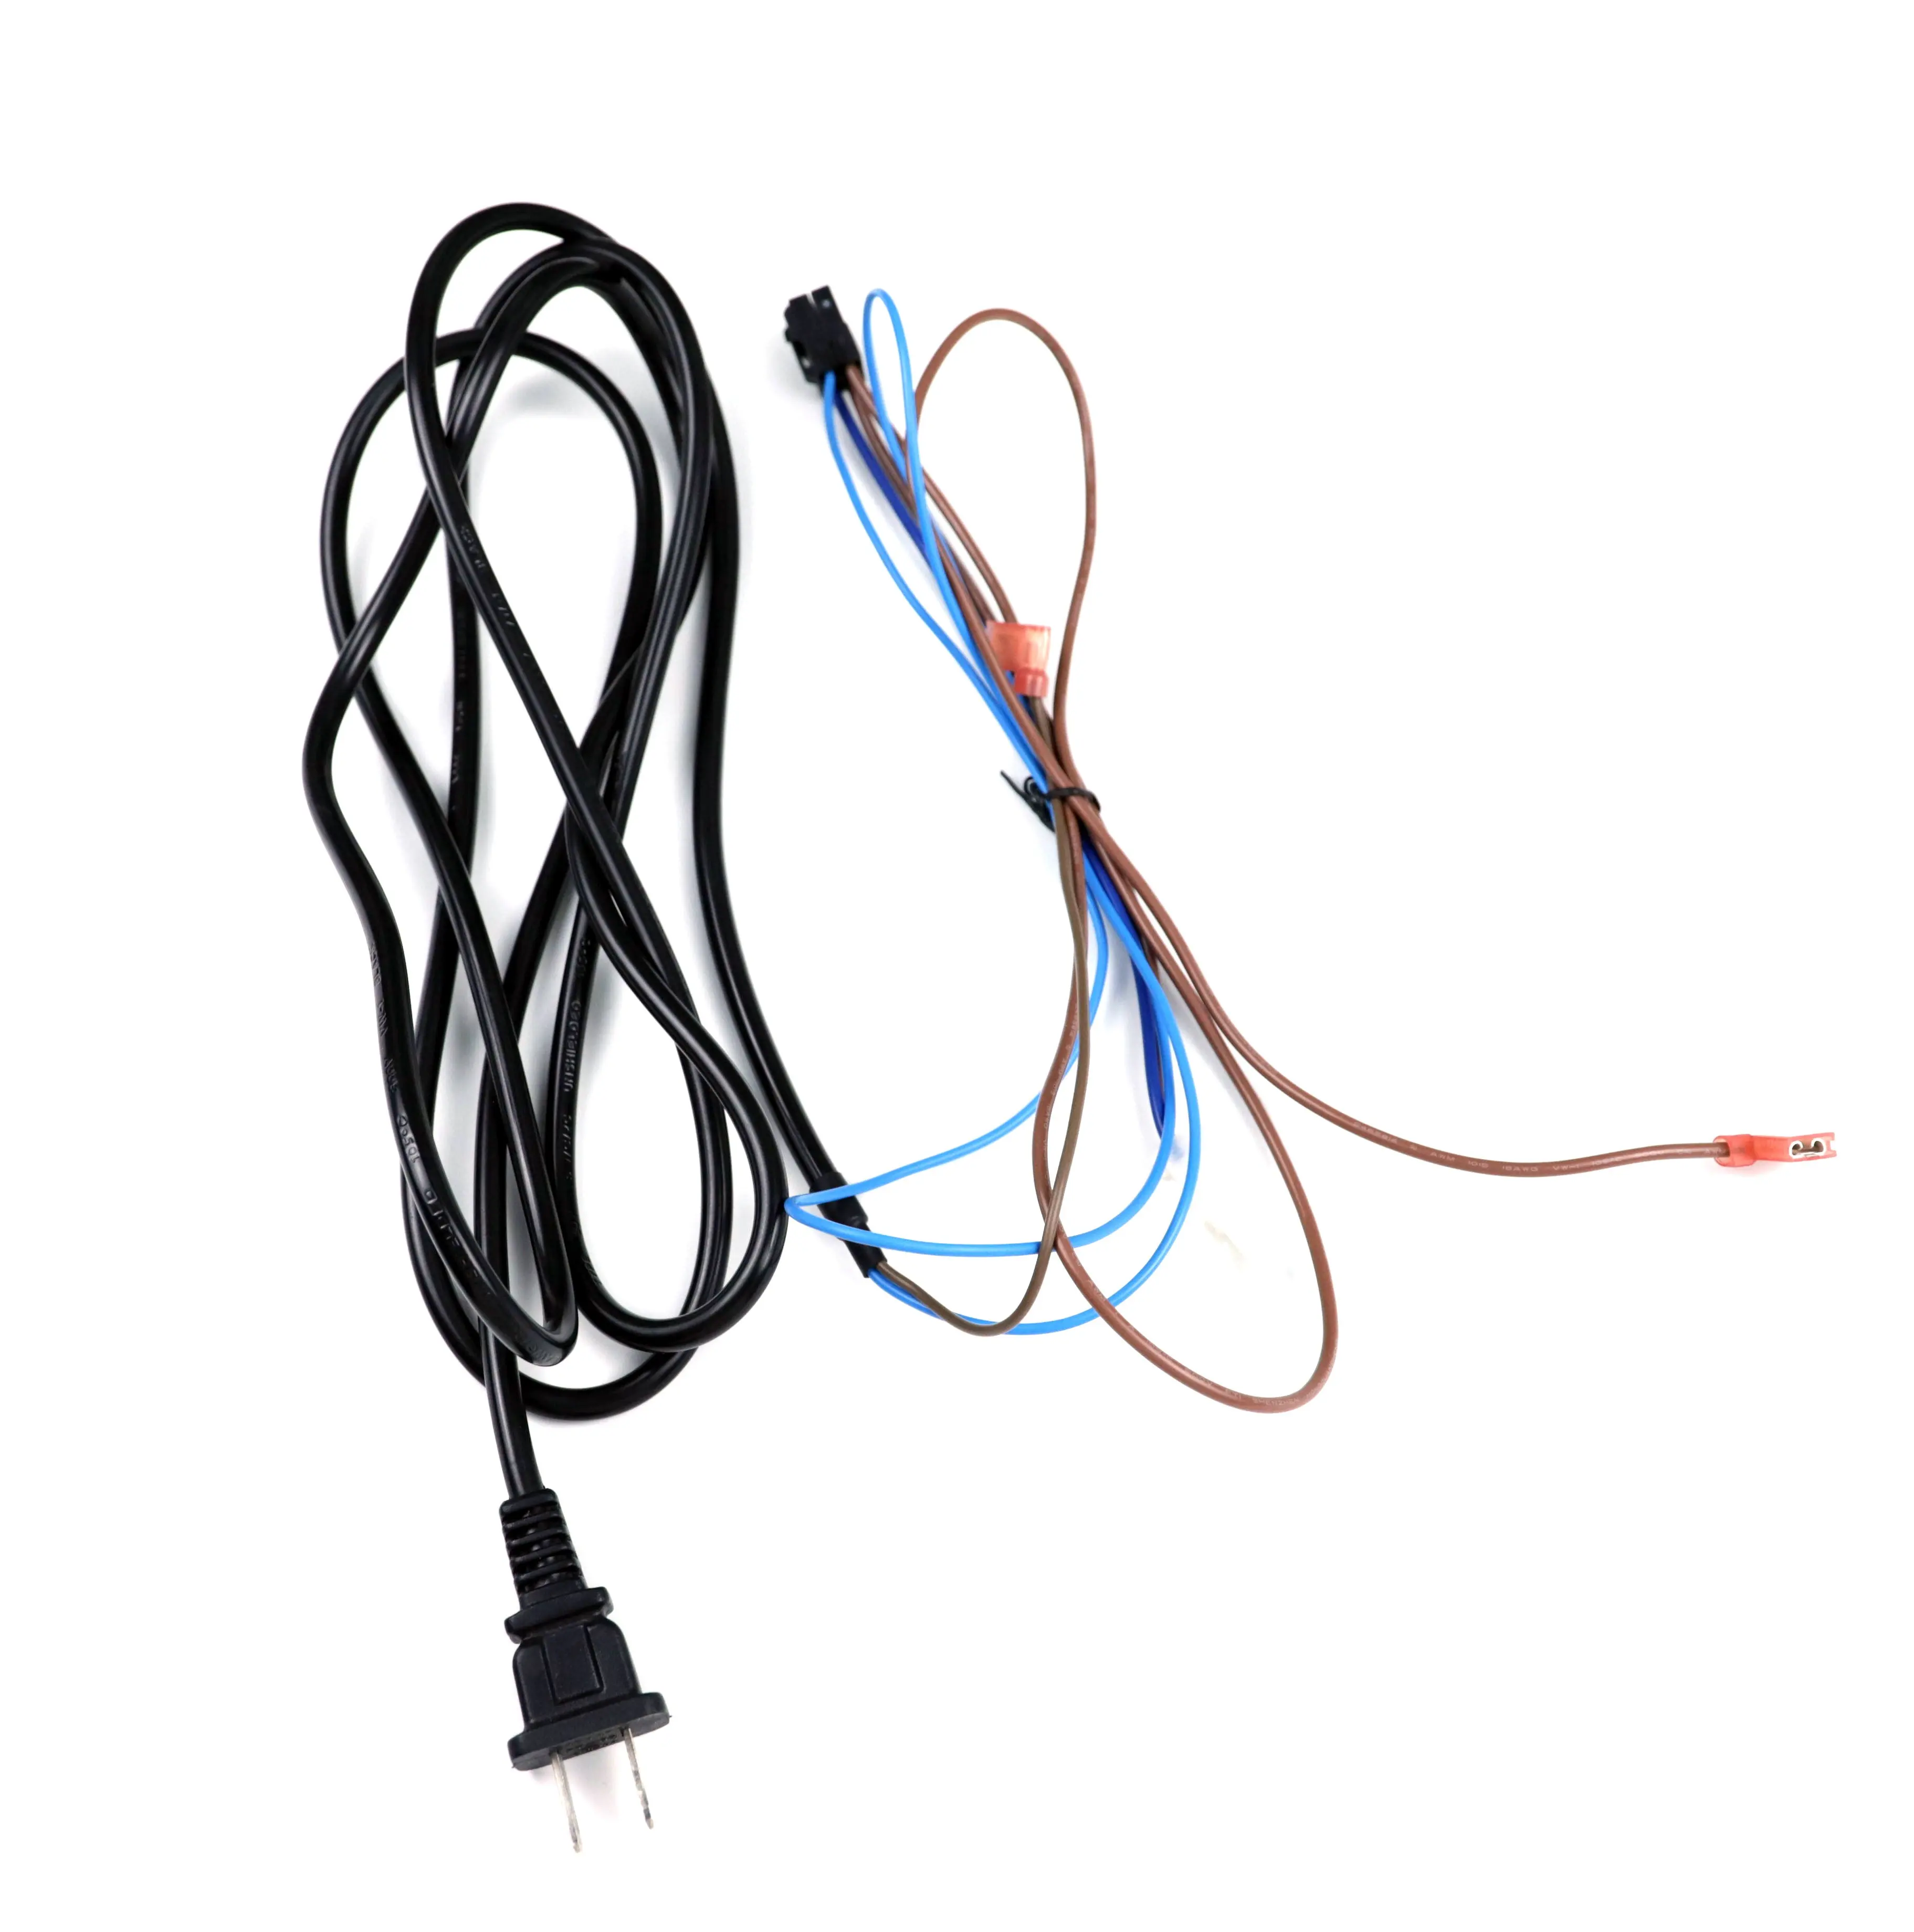 Conectores y cables personalizados, enchufes y enchufes eléctricos